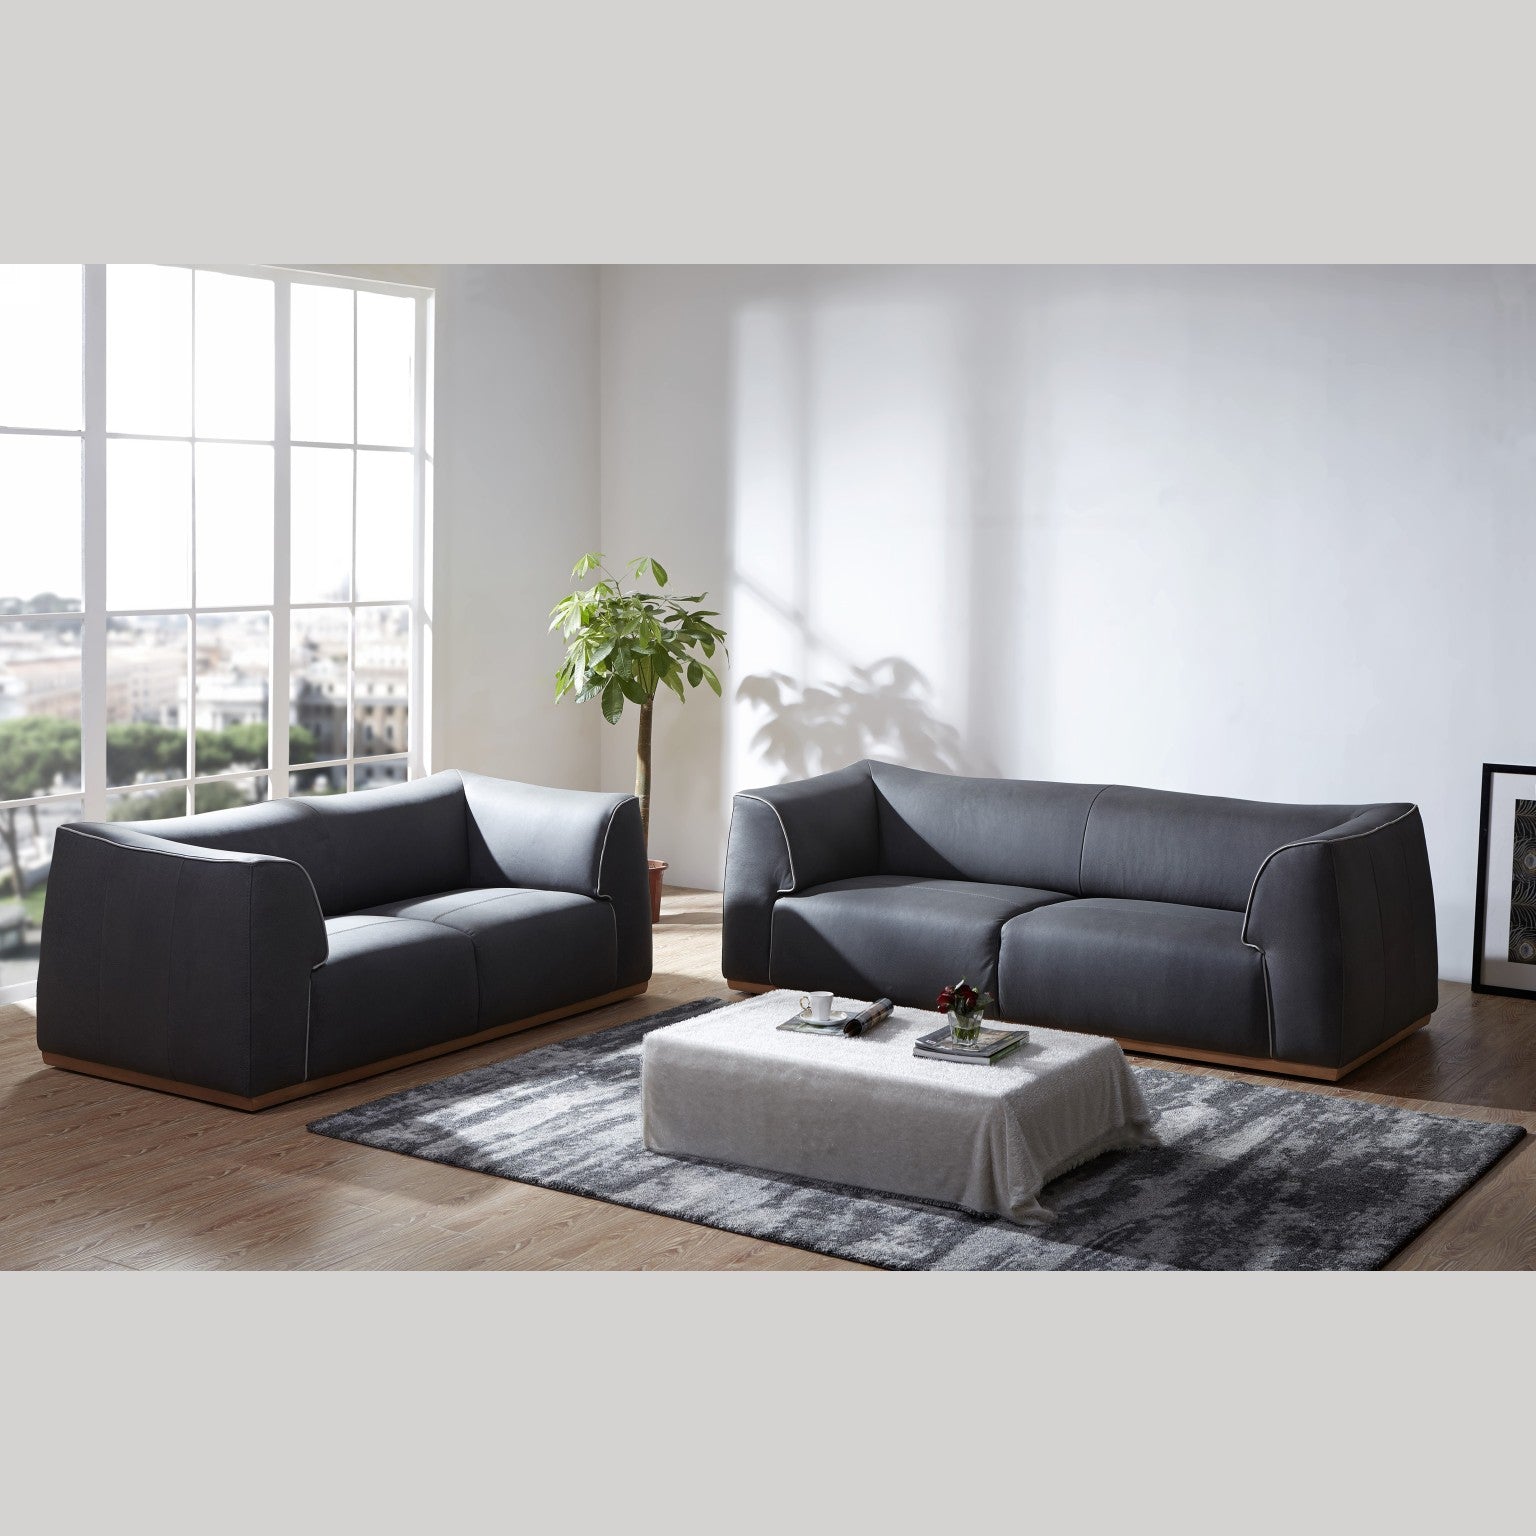 BUDAPEST 3 Seater Fabric Sofa Set Nuvo Italia